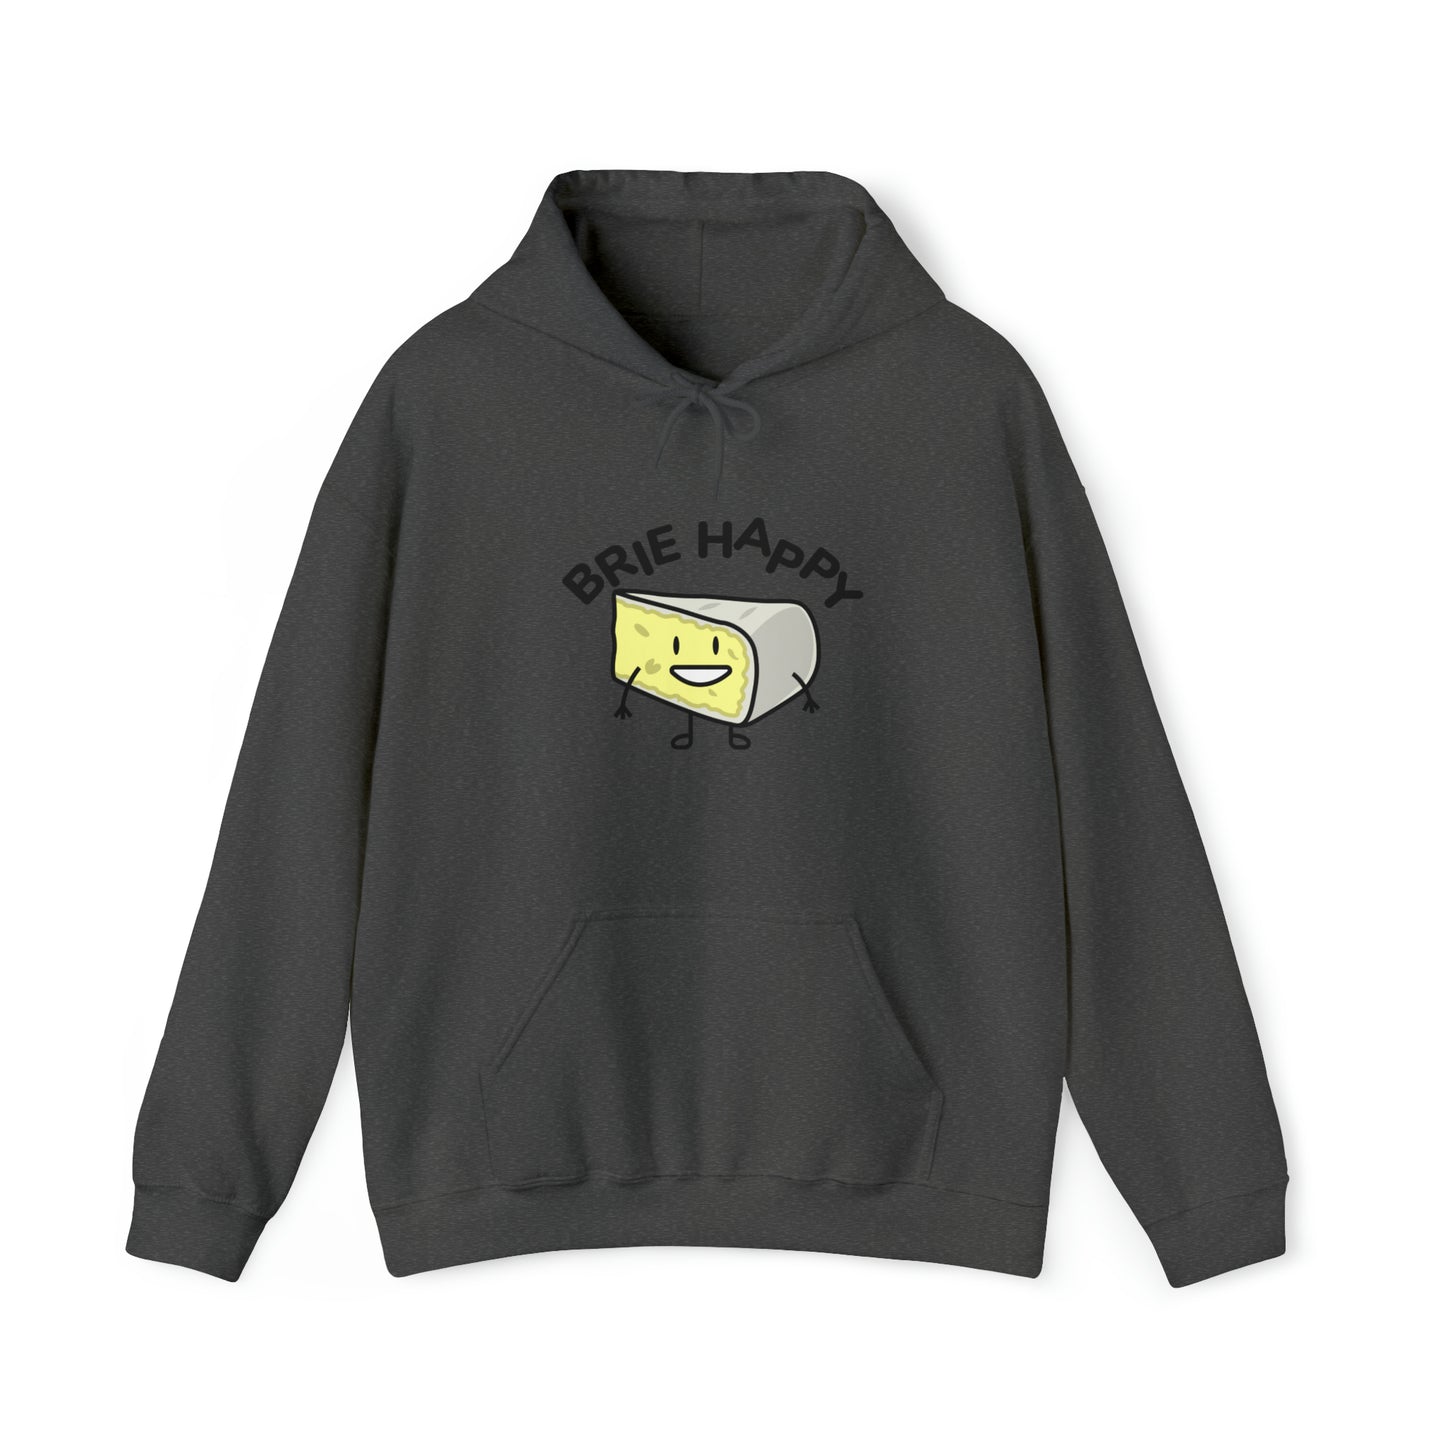 Custom Parody Hooded Sweatshirt, Brie happy design